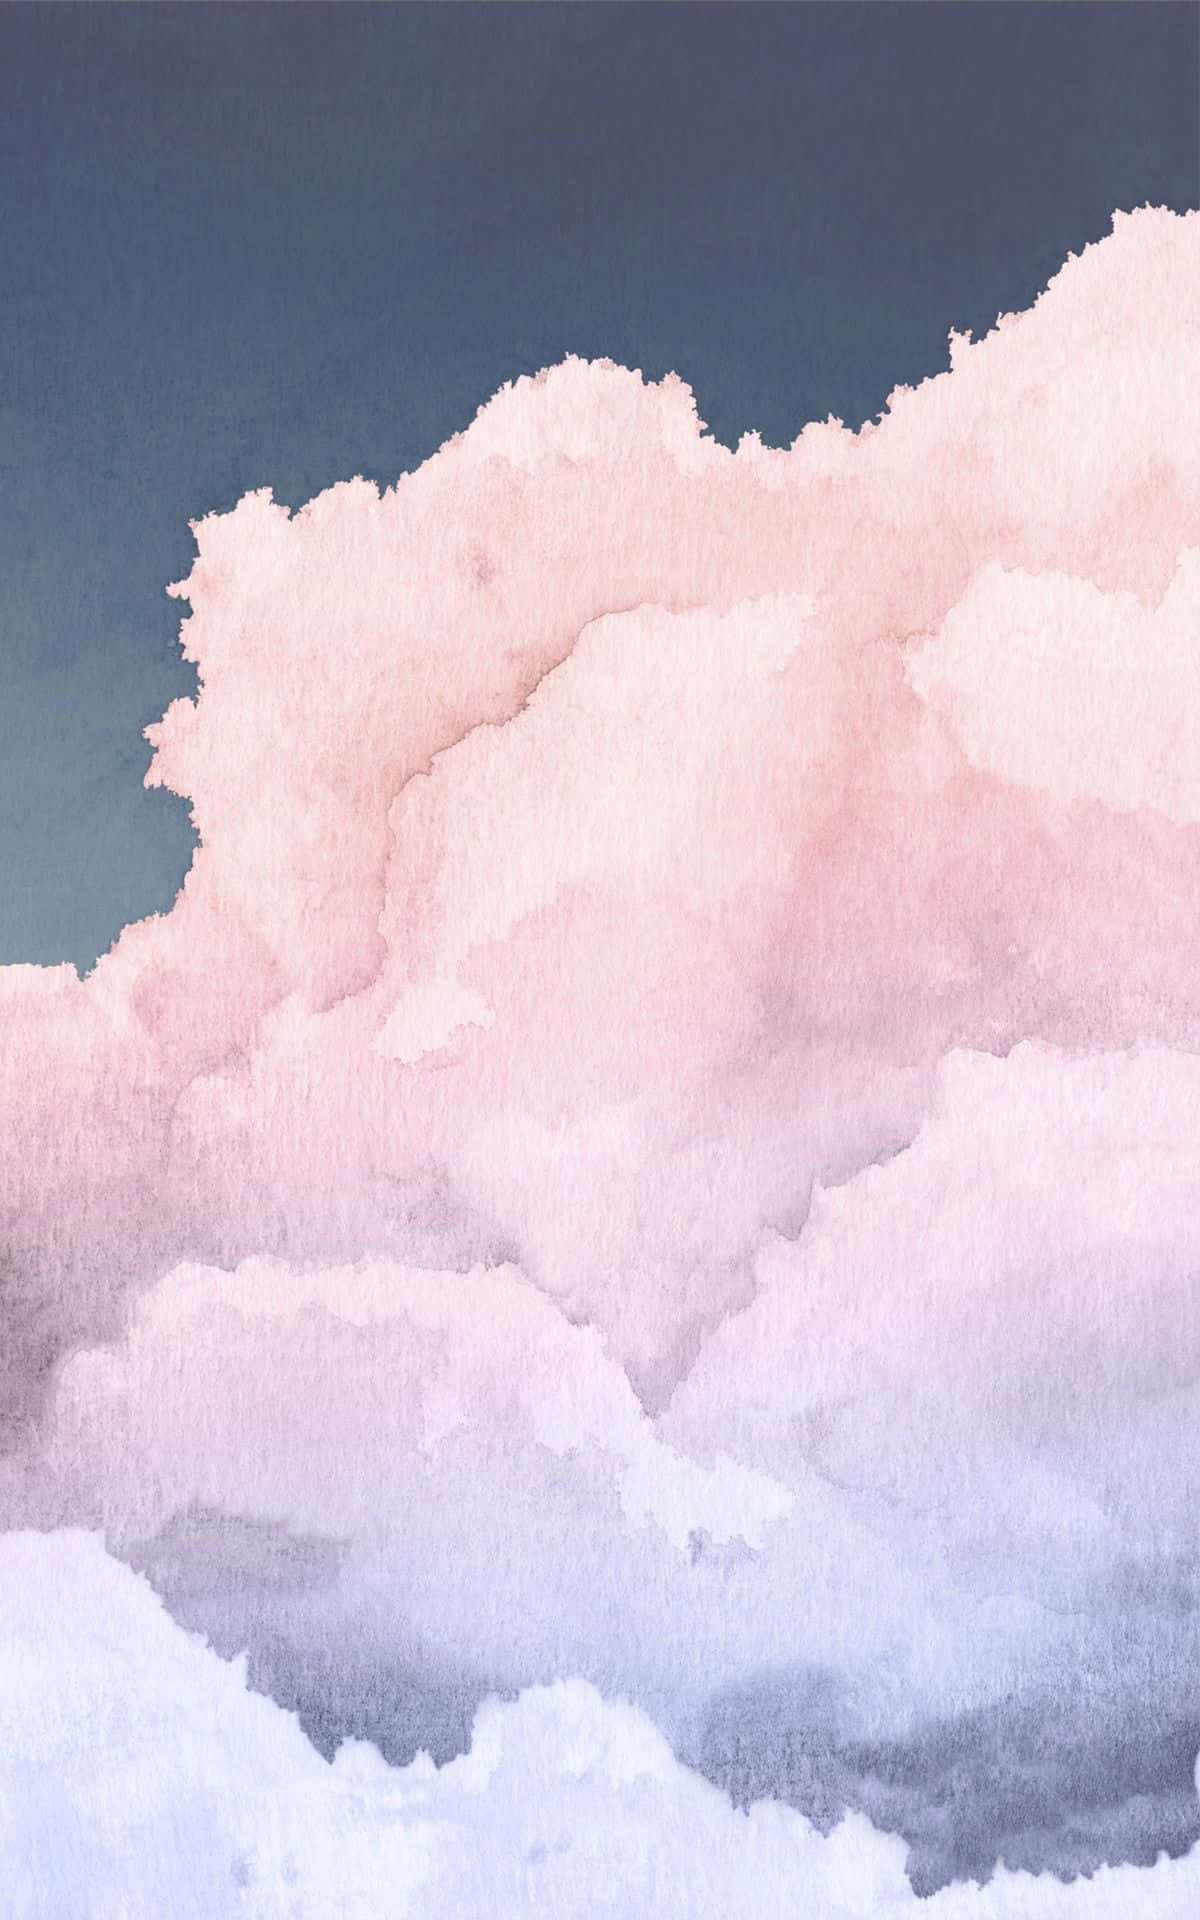 Einaquarellgemälde Von Wolken In Rosa Und Blau Wallpaper